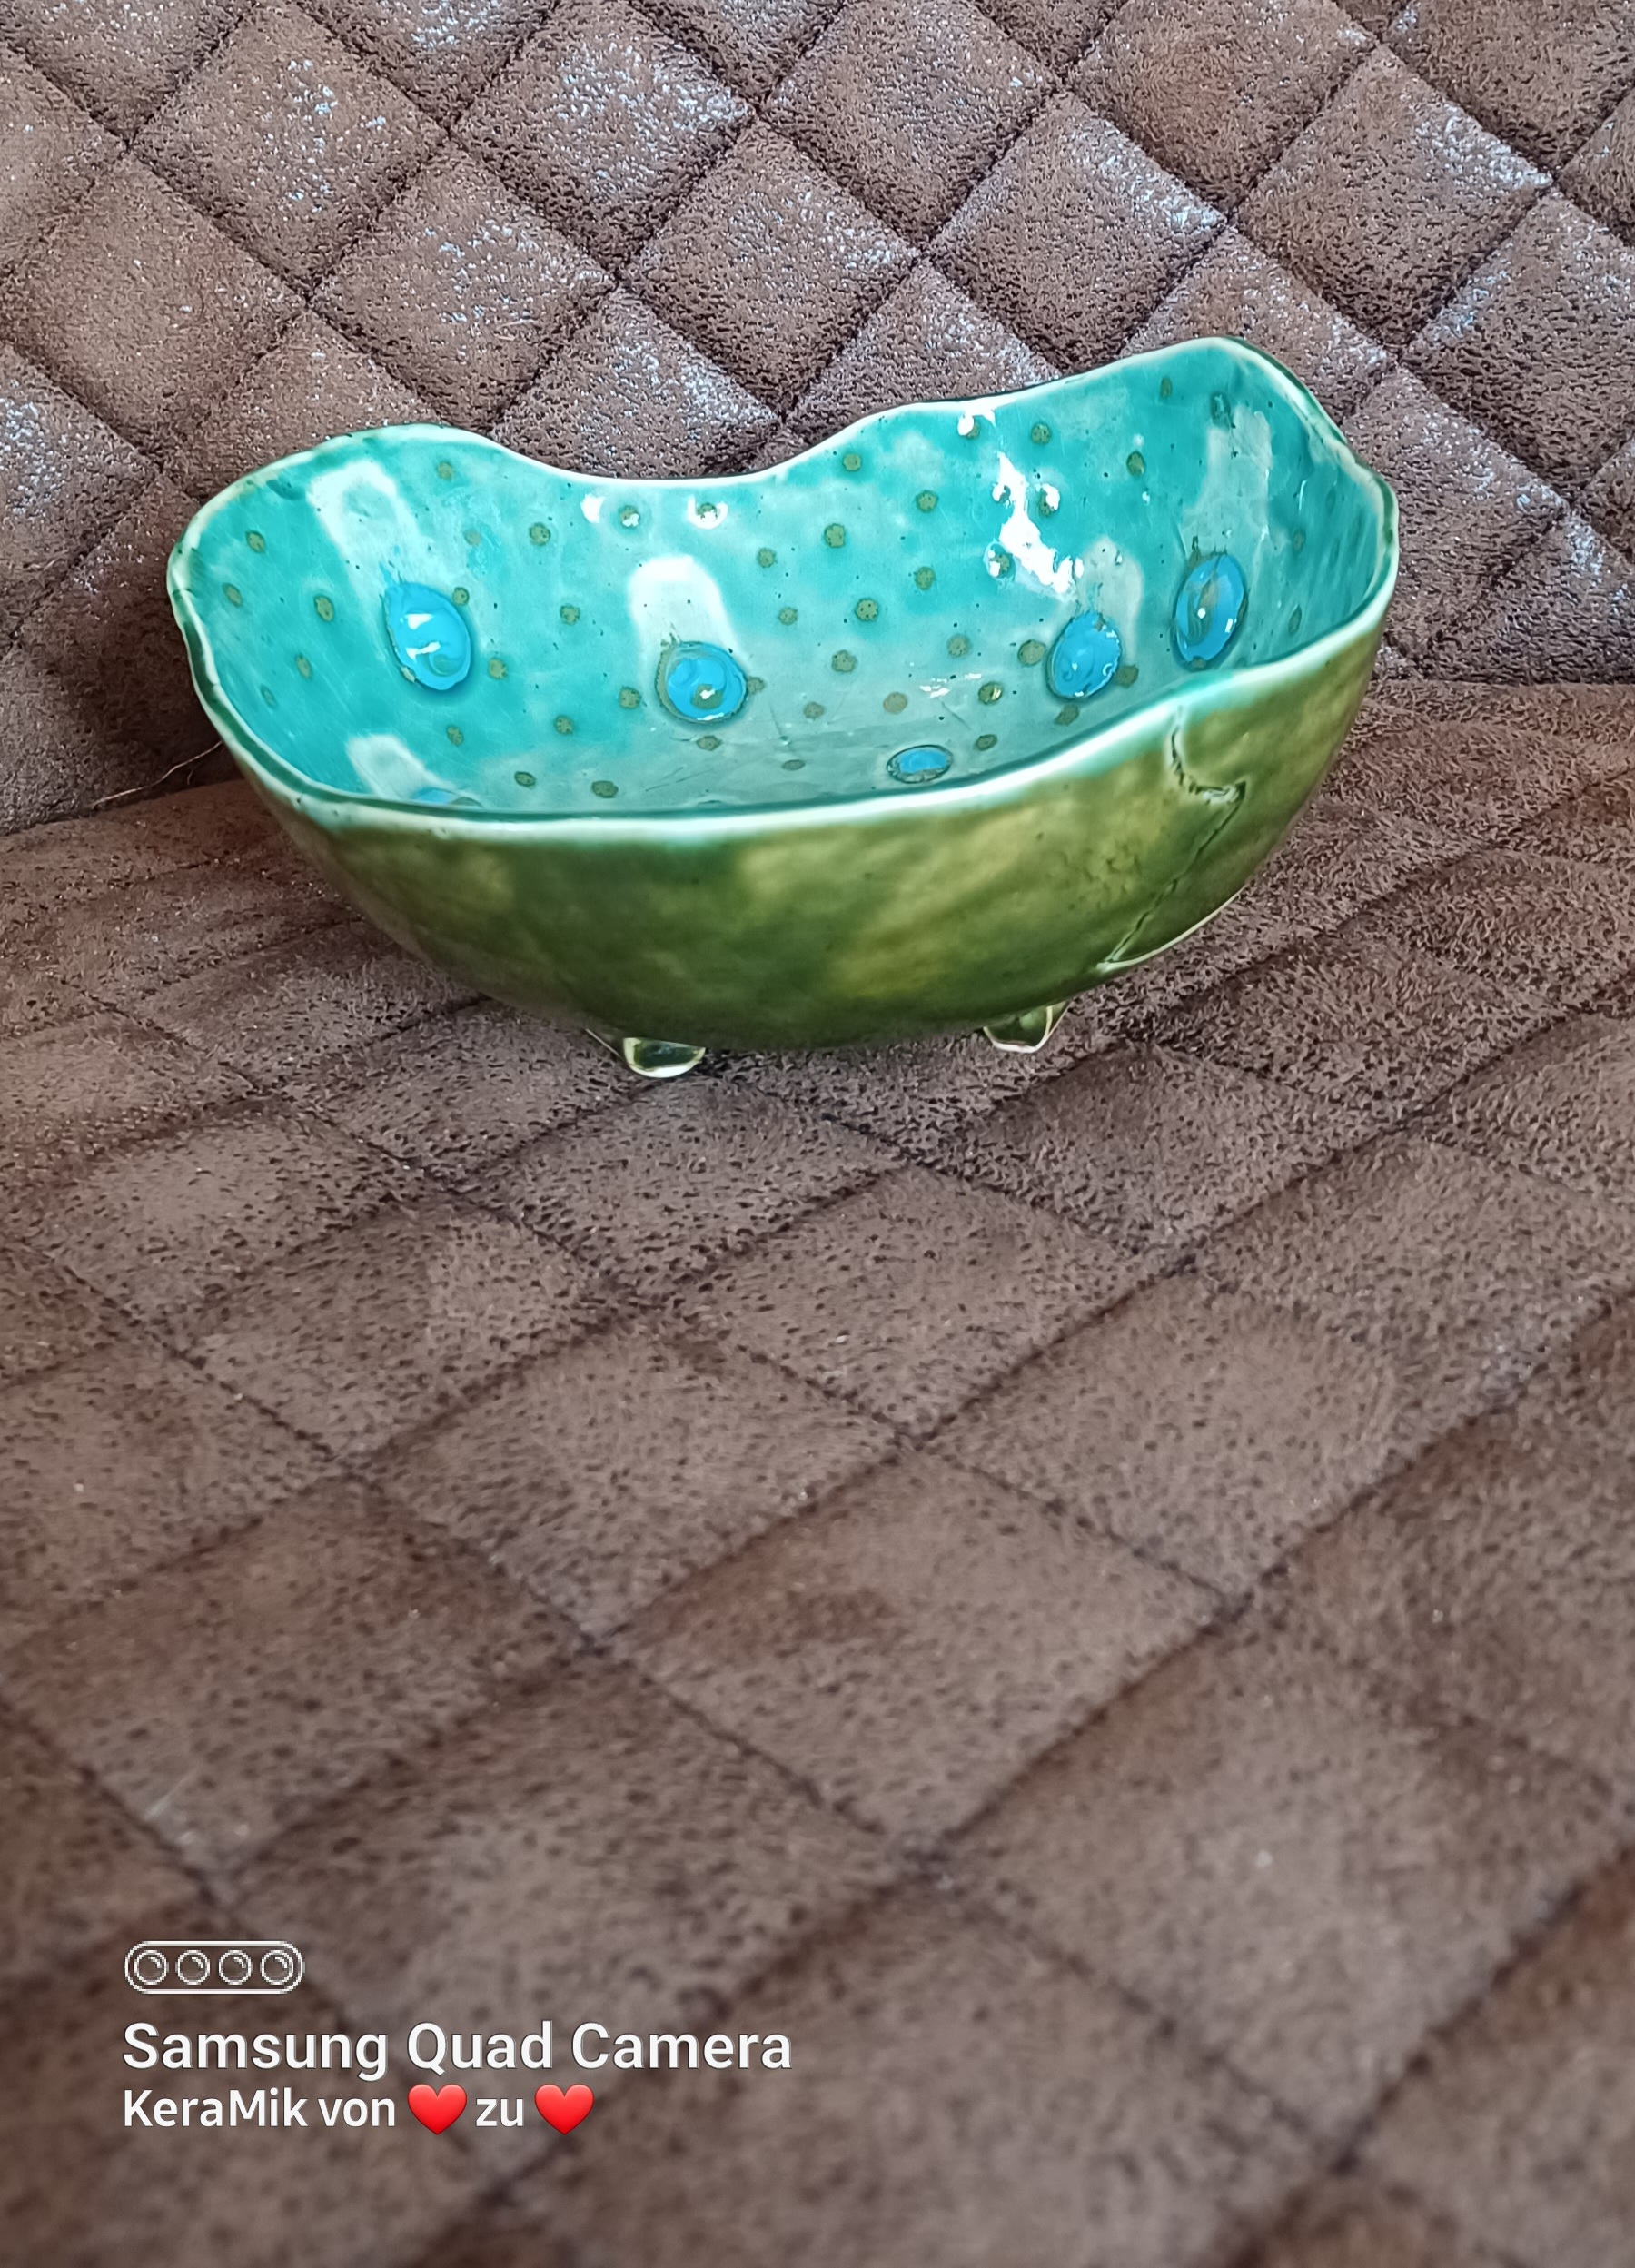 handgefertigte Keramik Schale, grüne Schale mit grünen und blauen Punkten, hangefertigte Keramik Unikate, KeraMik von Herz zu Herz, Keramik Atelier in Augsburg